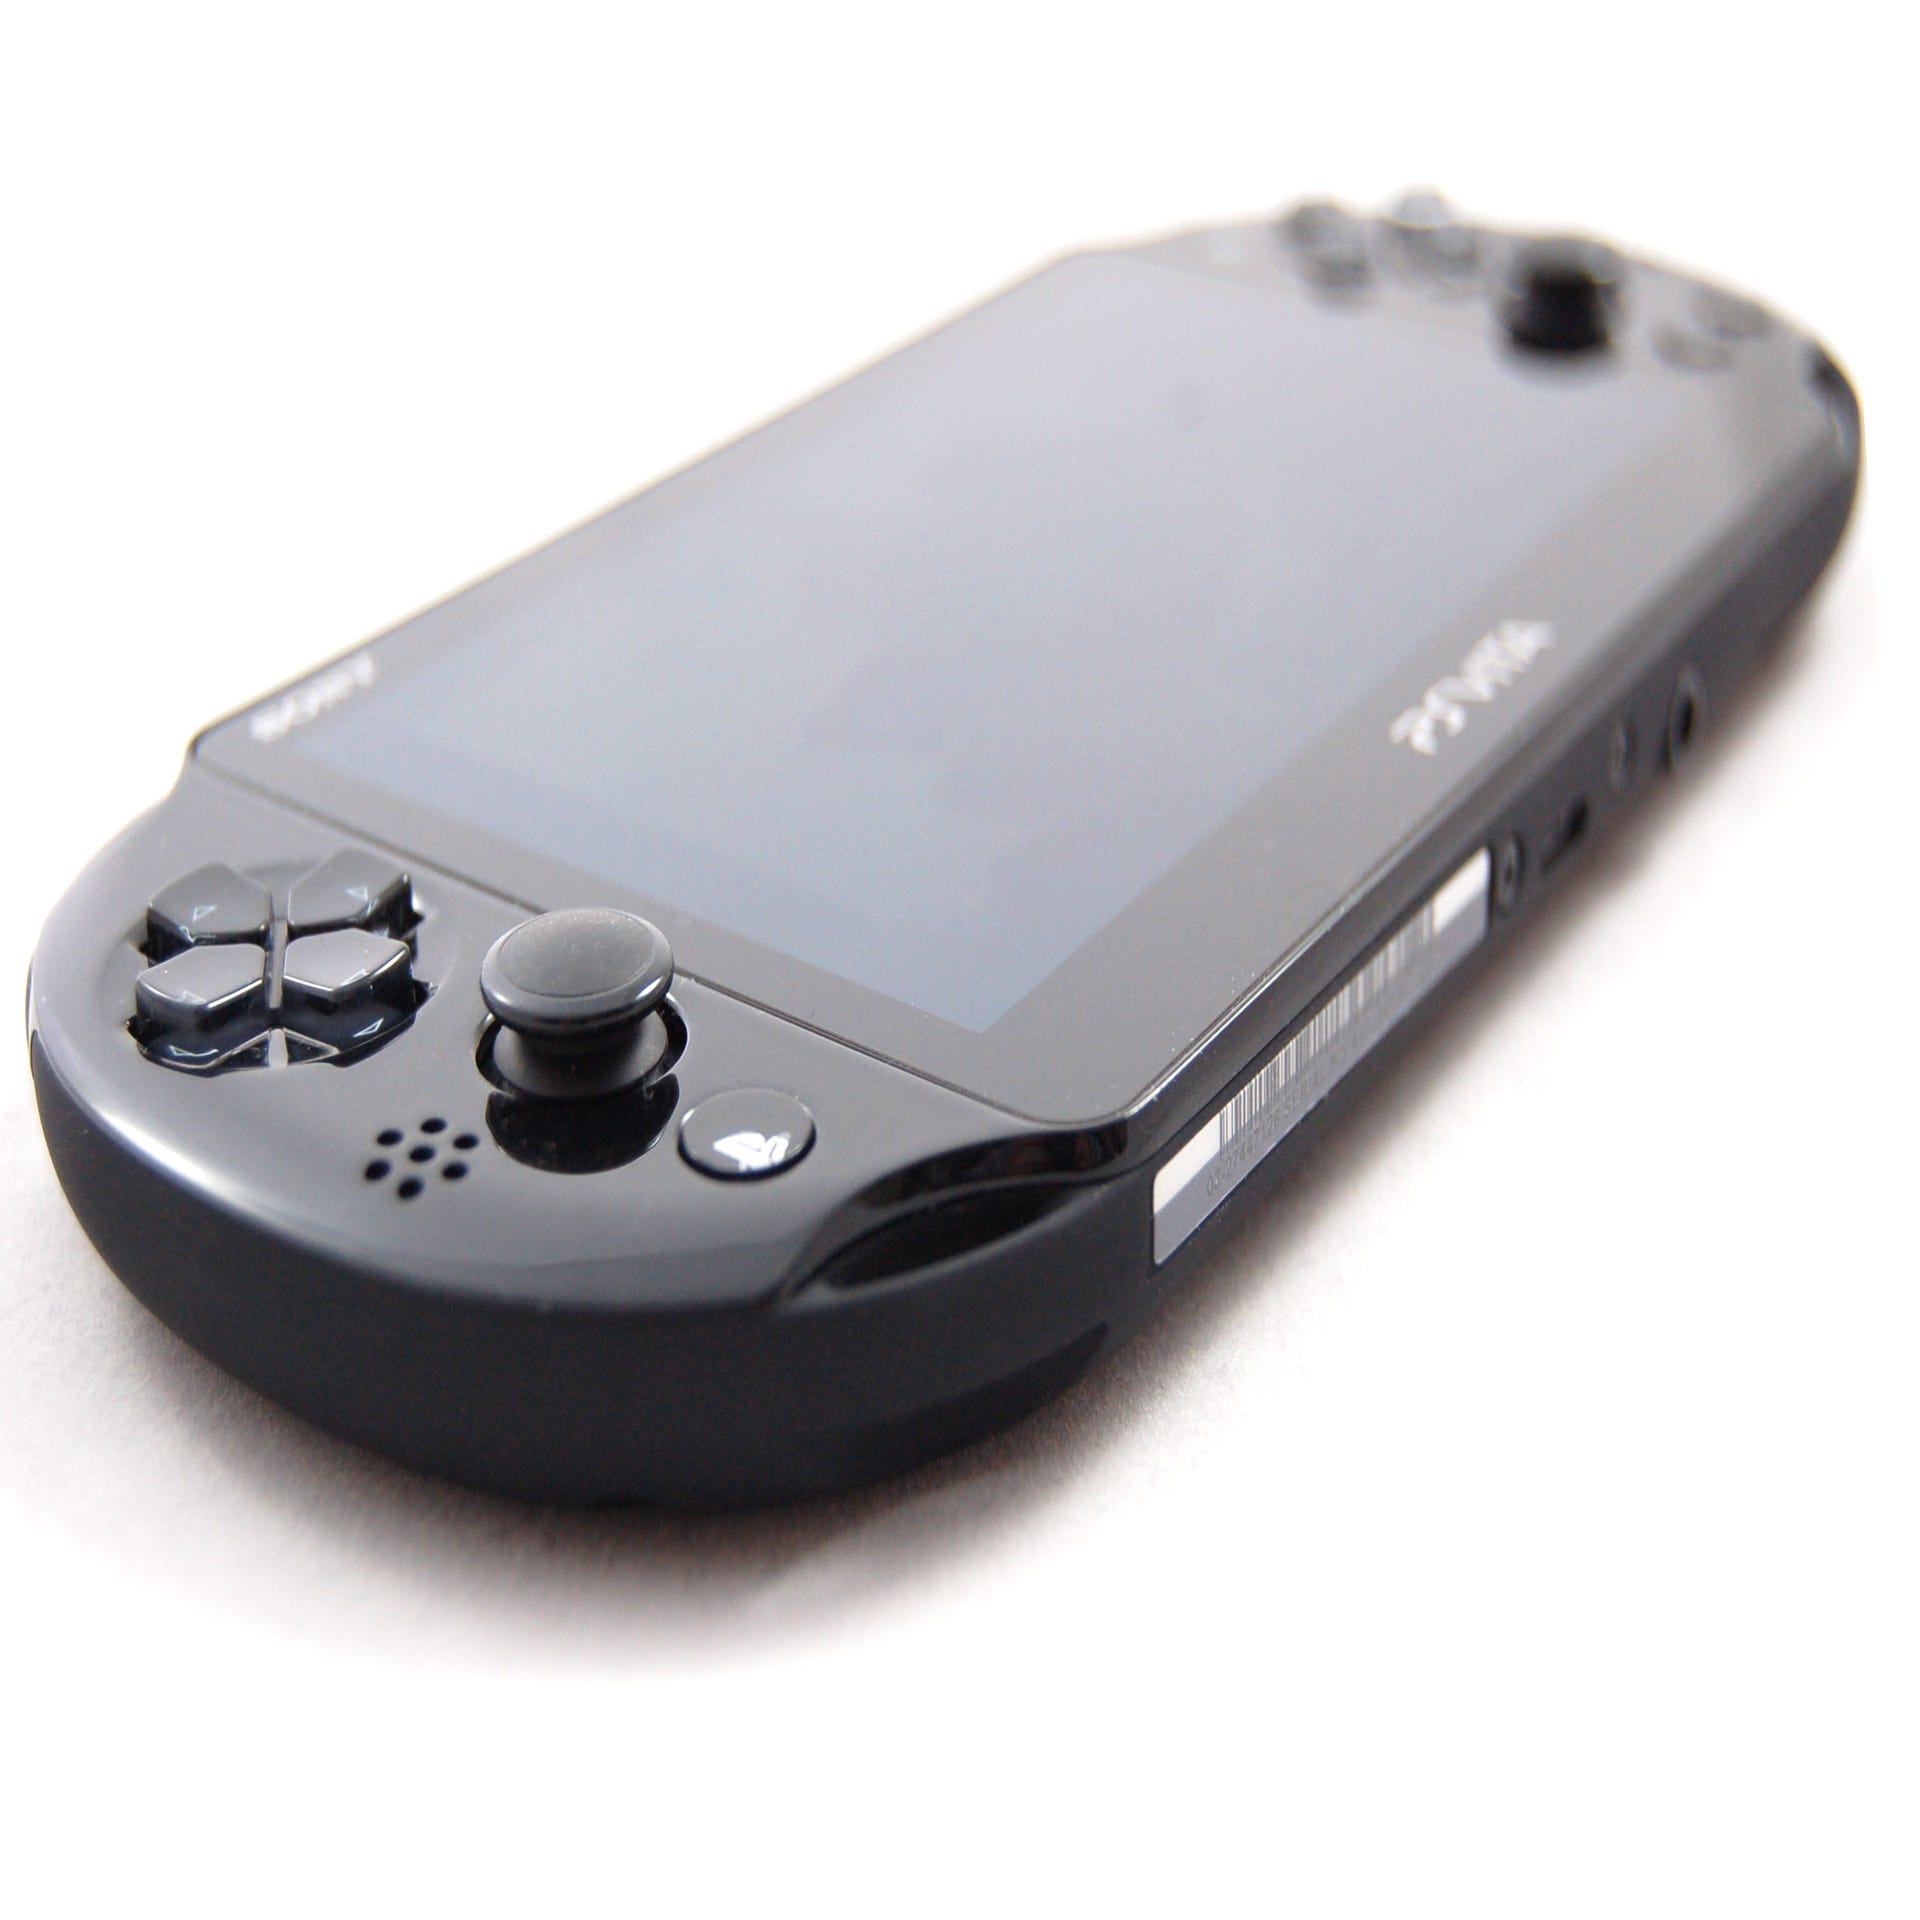 PS Vita Slim Review - Mobile Gaming